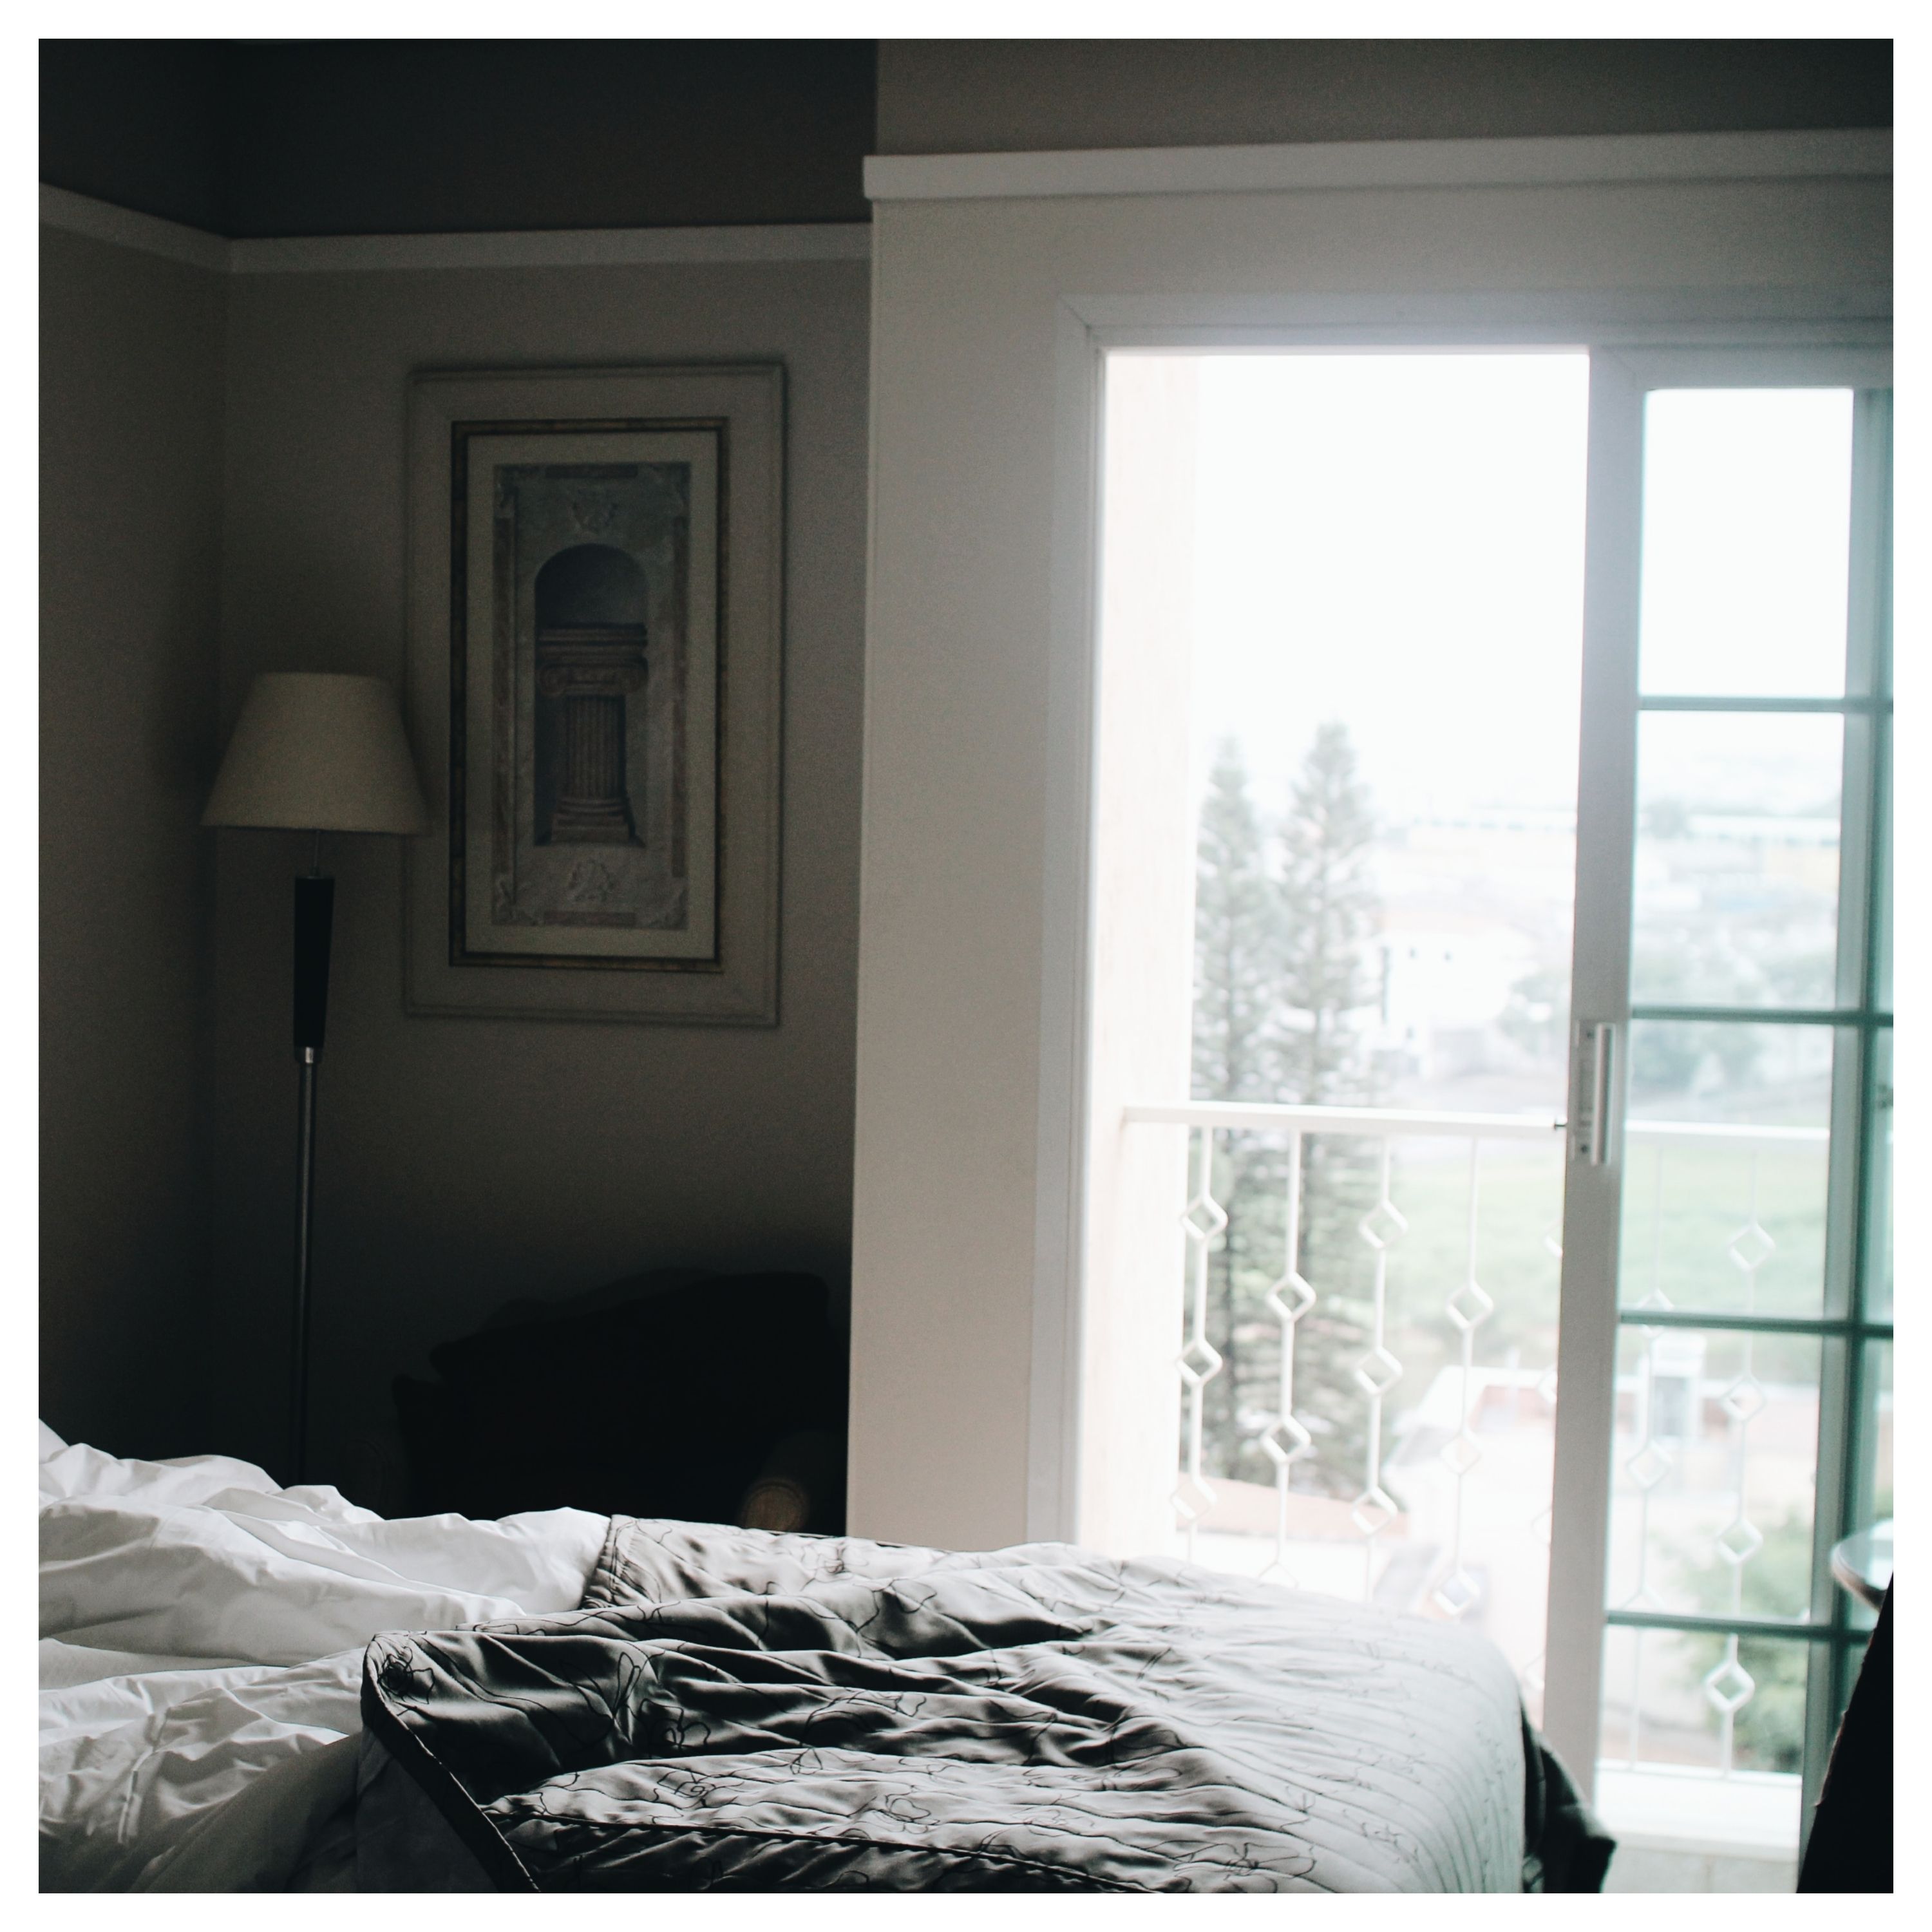 Une fenêtre ouverte donne sur un balcon, vue depuis une chambre avec un lit défait